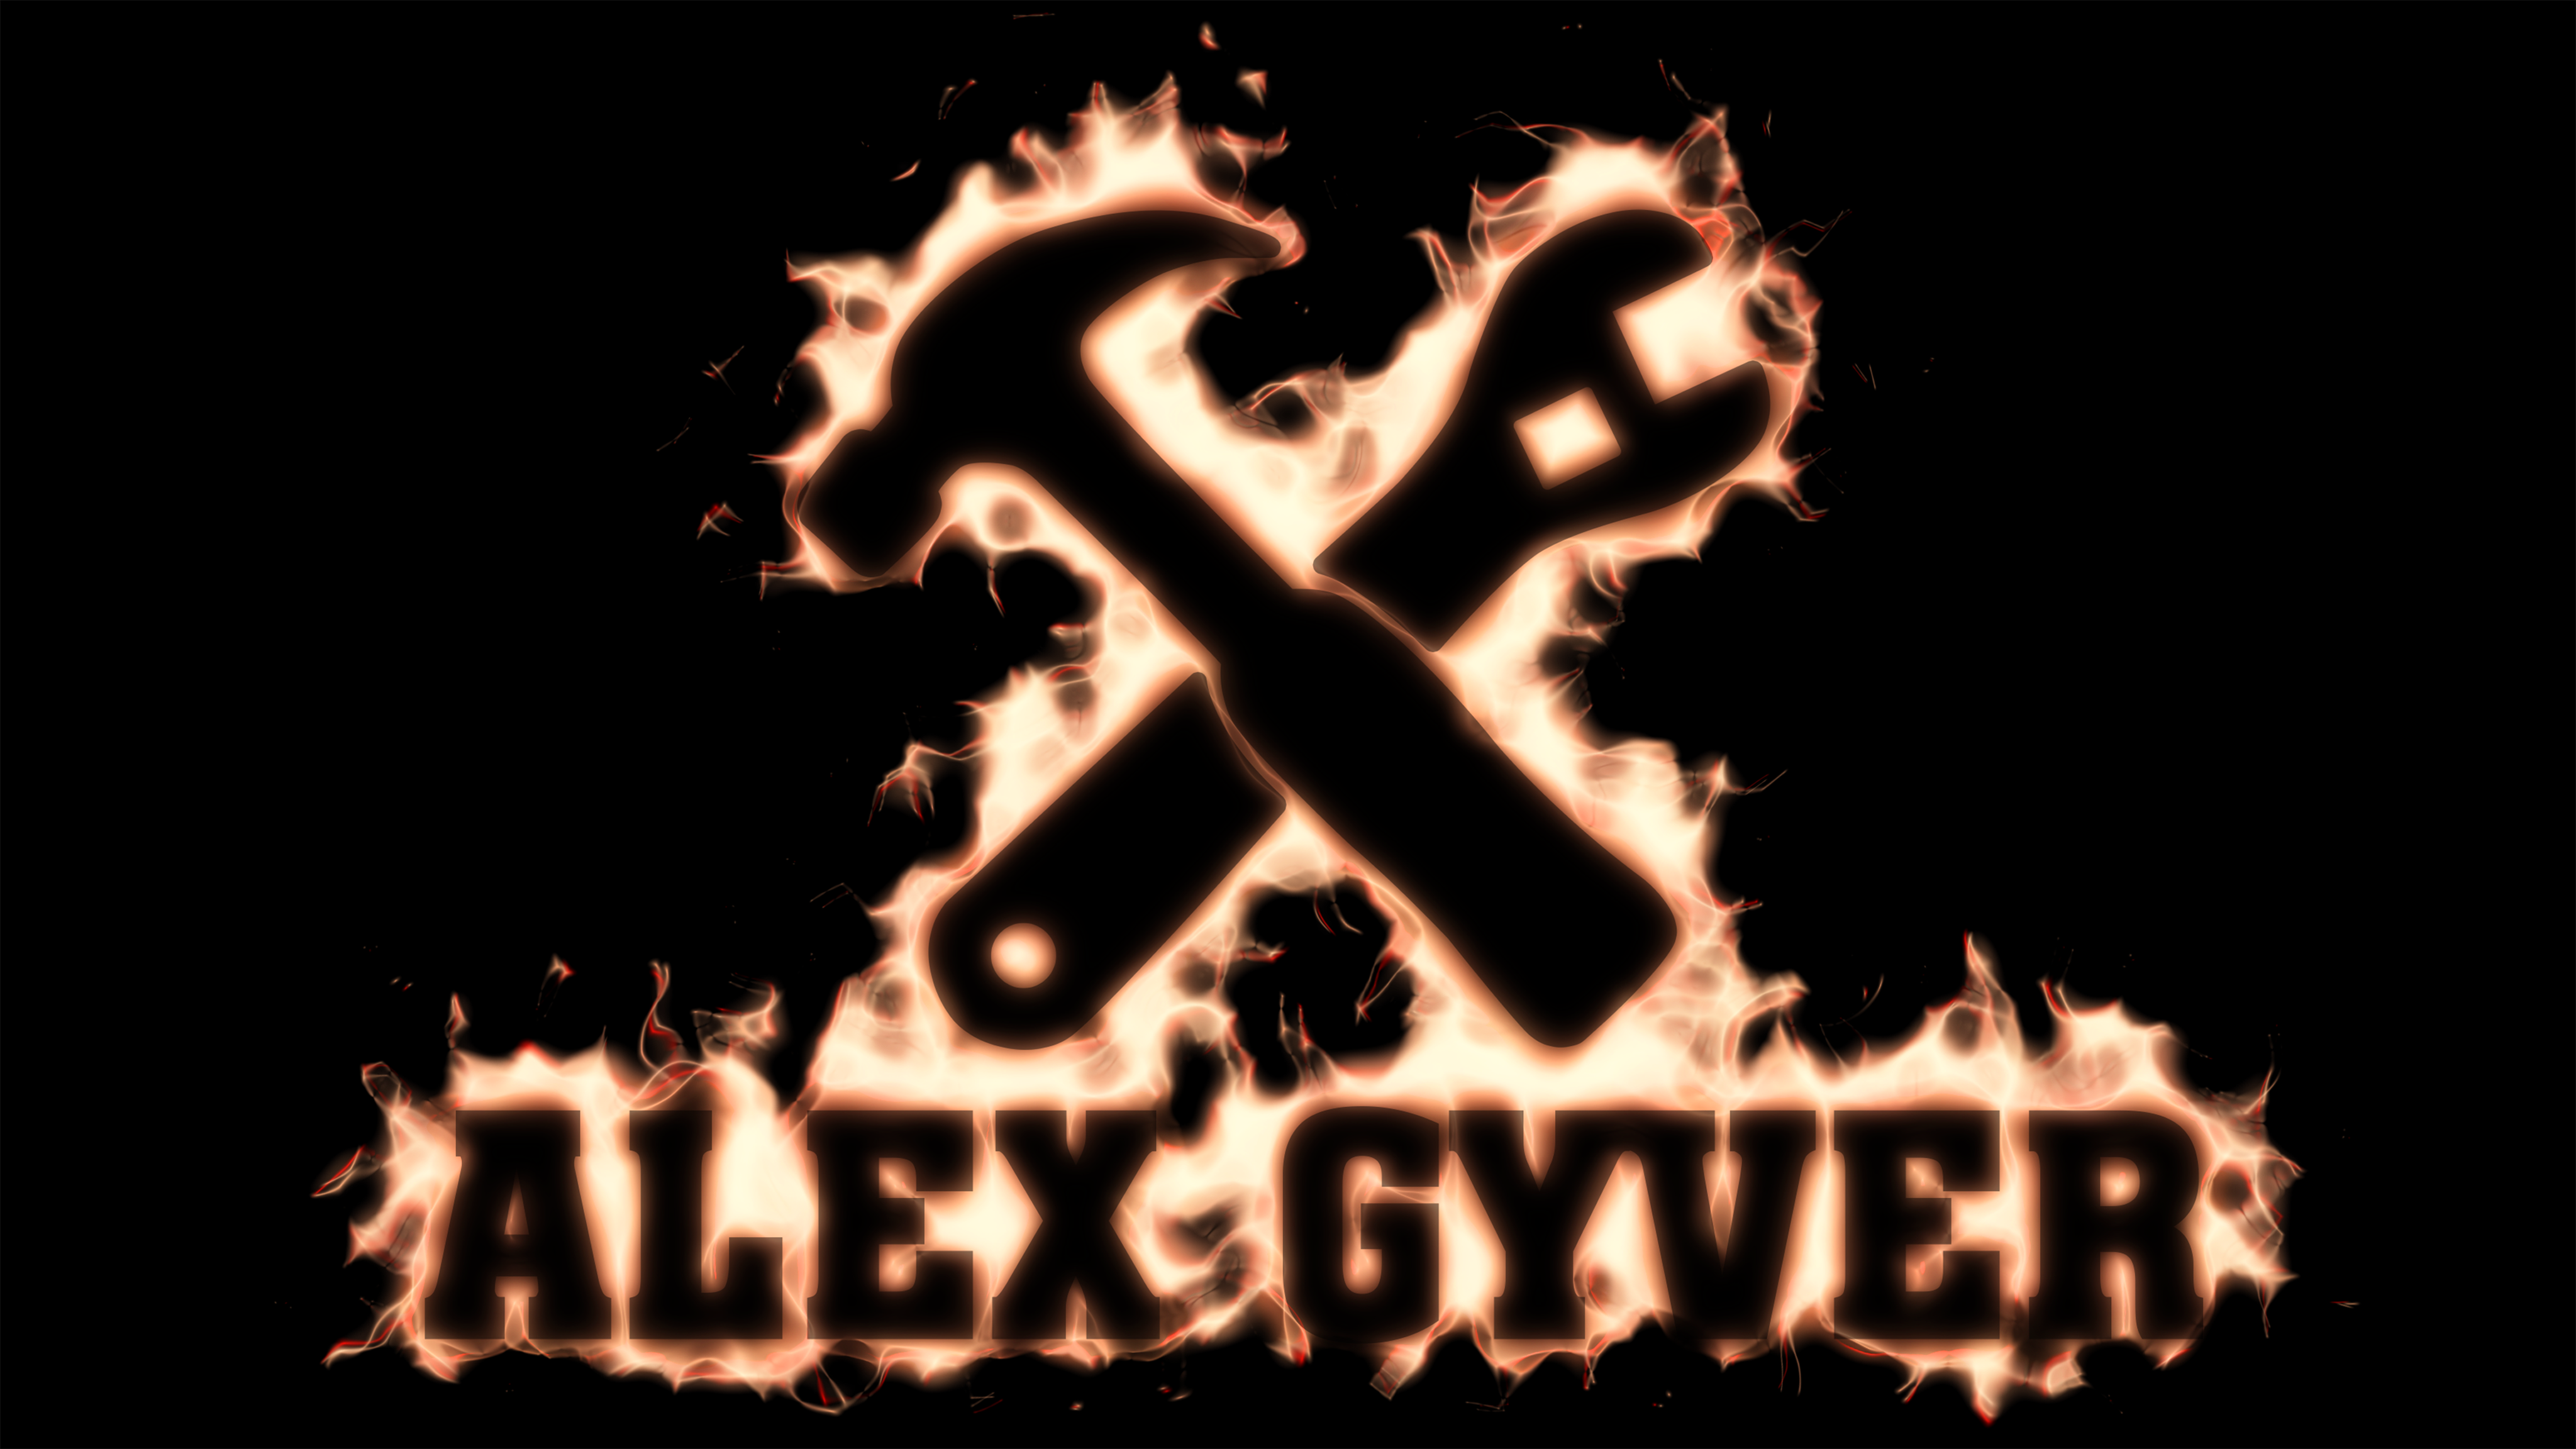 Алекс Гайвер. ALEXGYVER лого. Алекс Гайвер логотип. ALEXGYVER лицо.